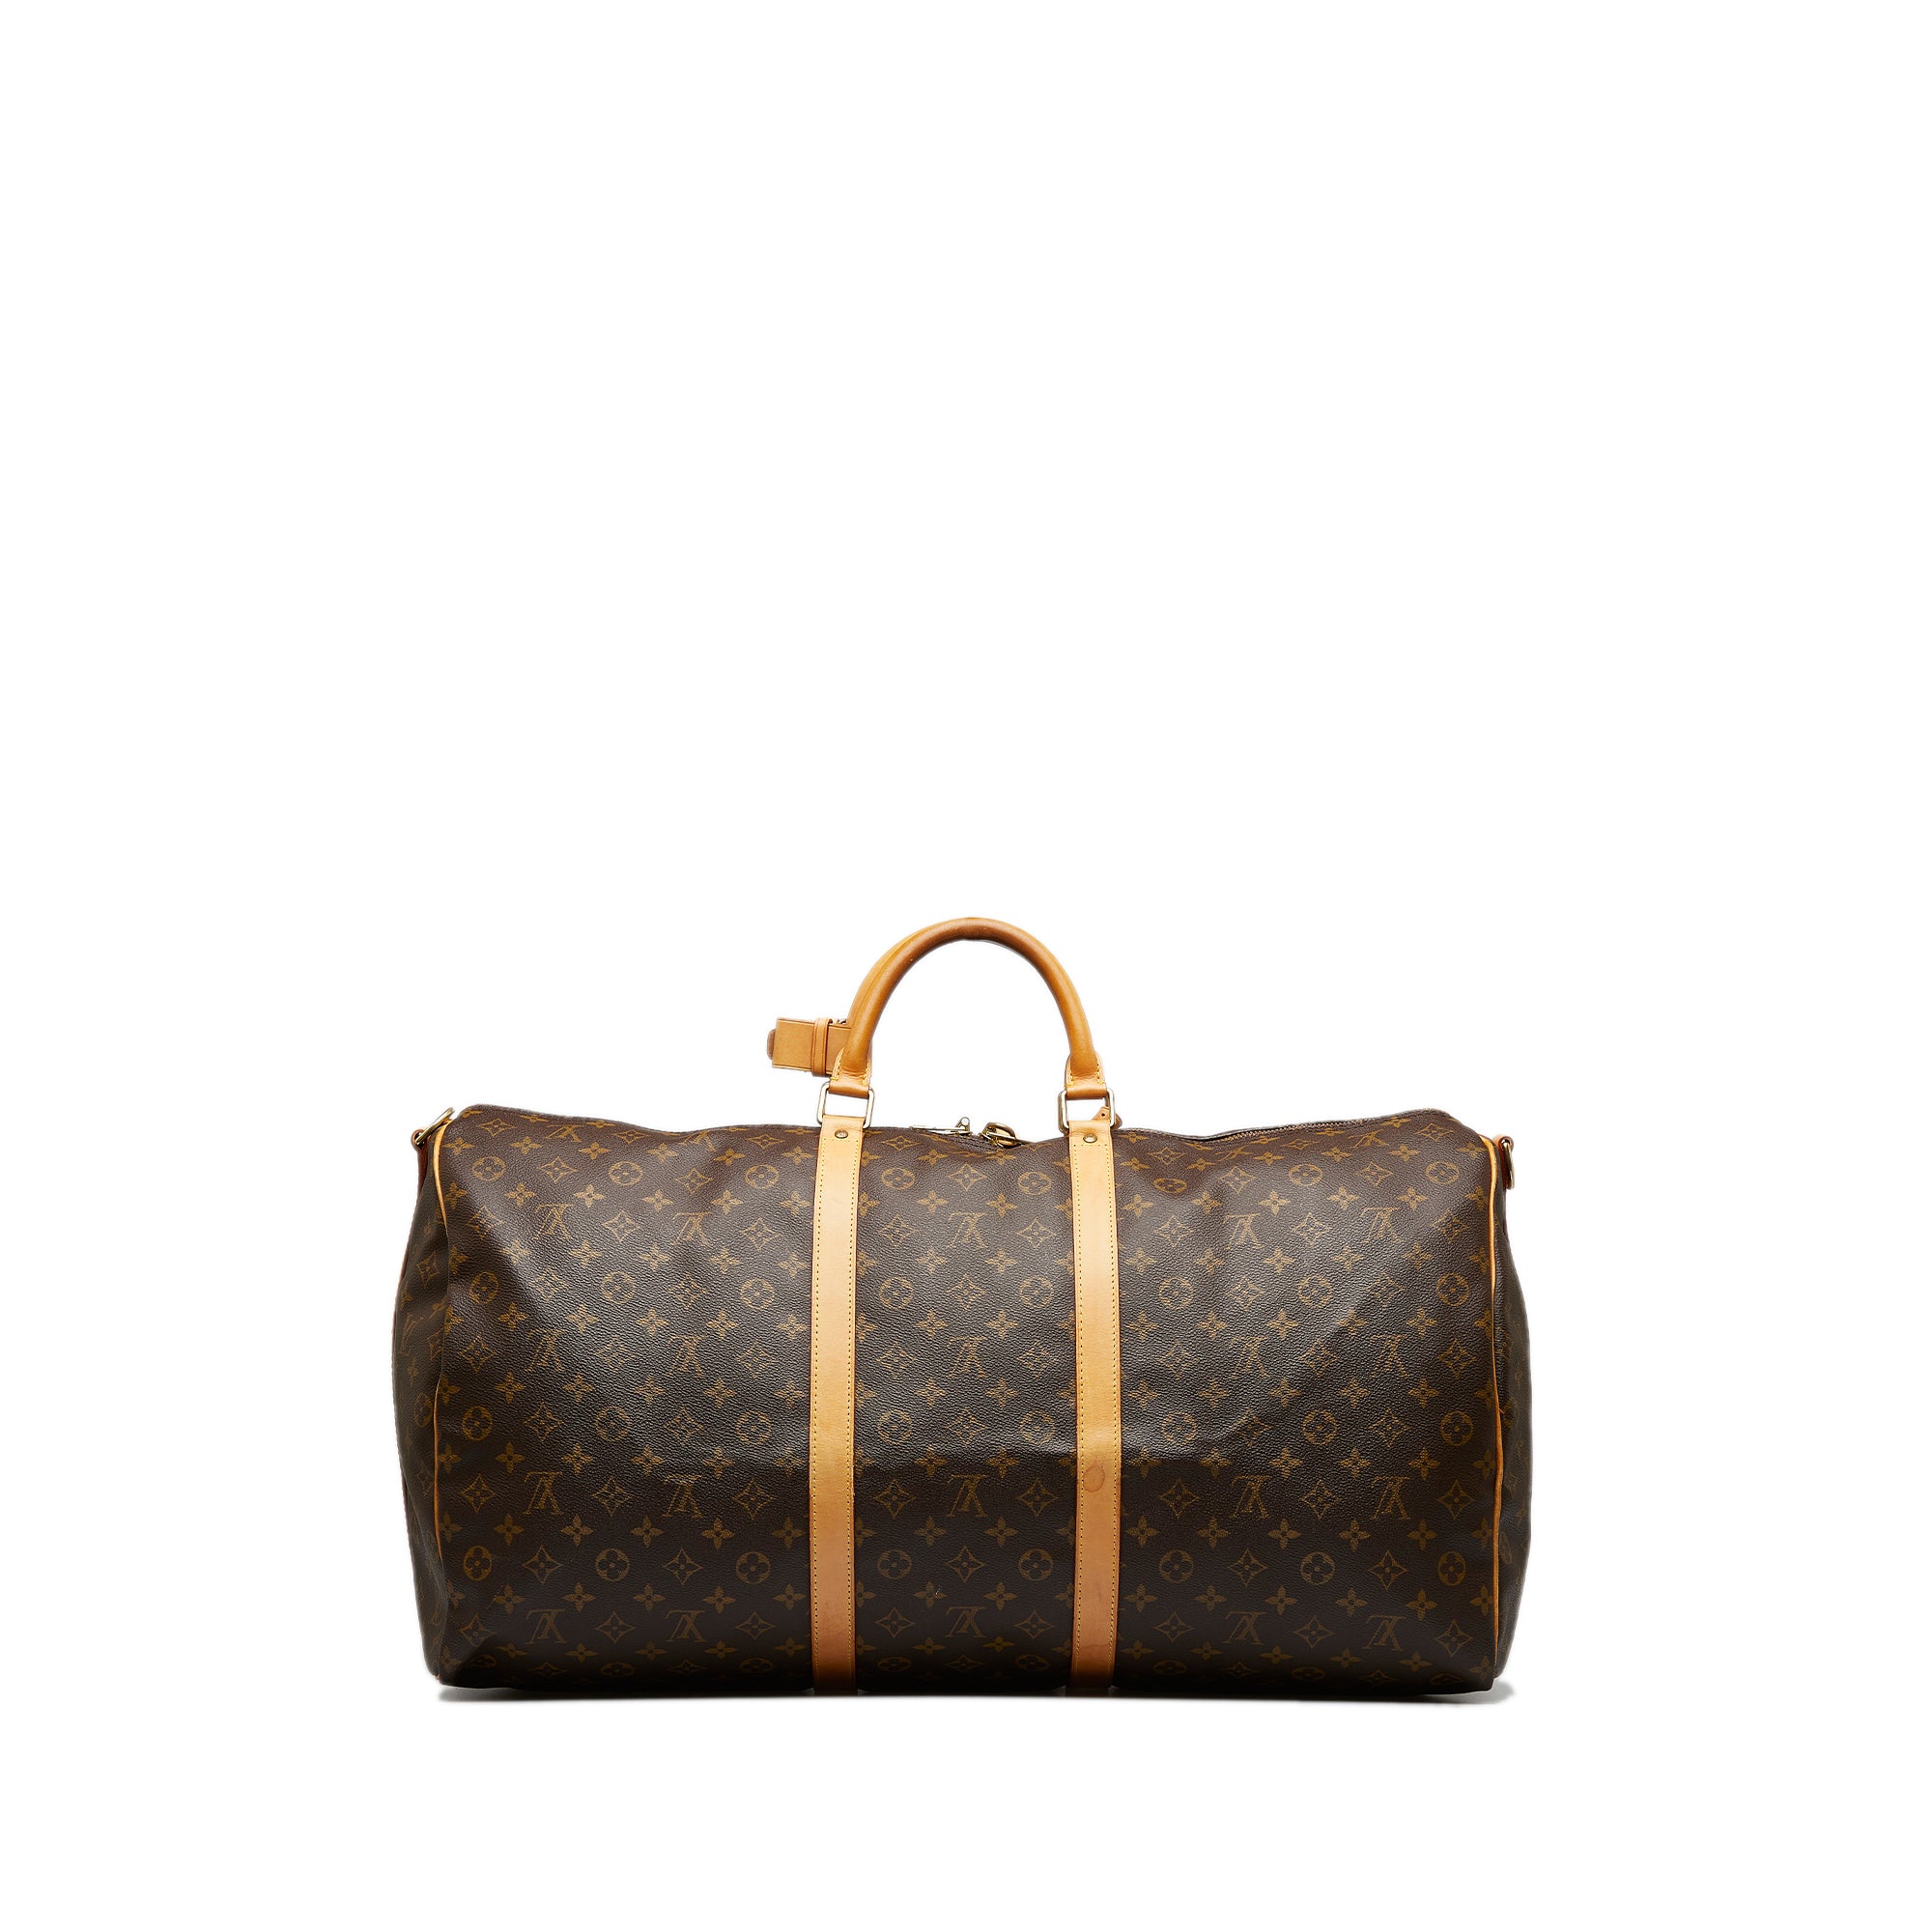 Louis Vuitton Keepall 60 Travel